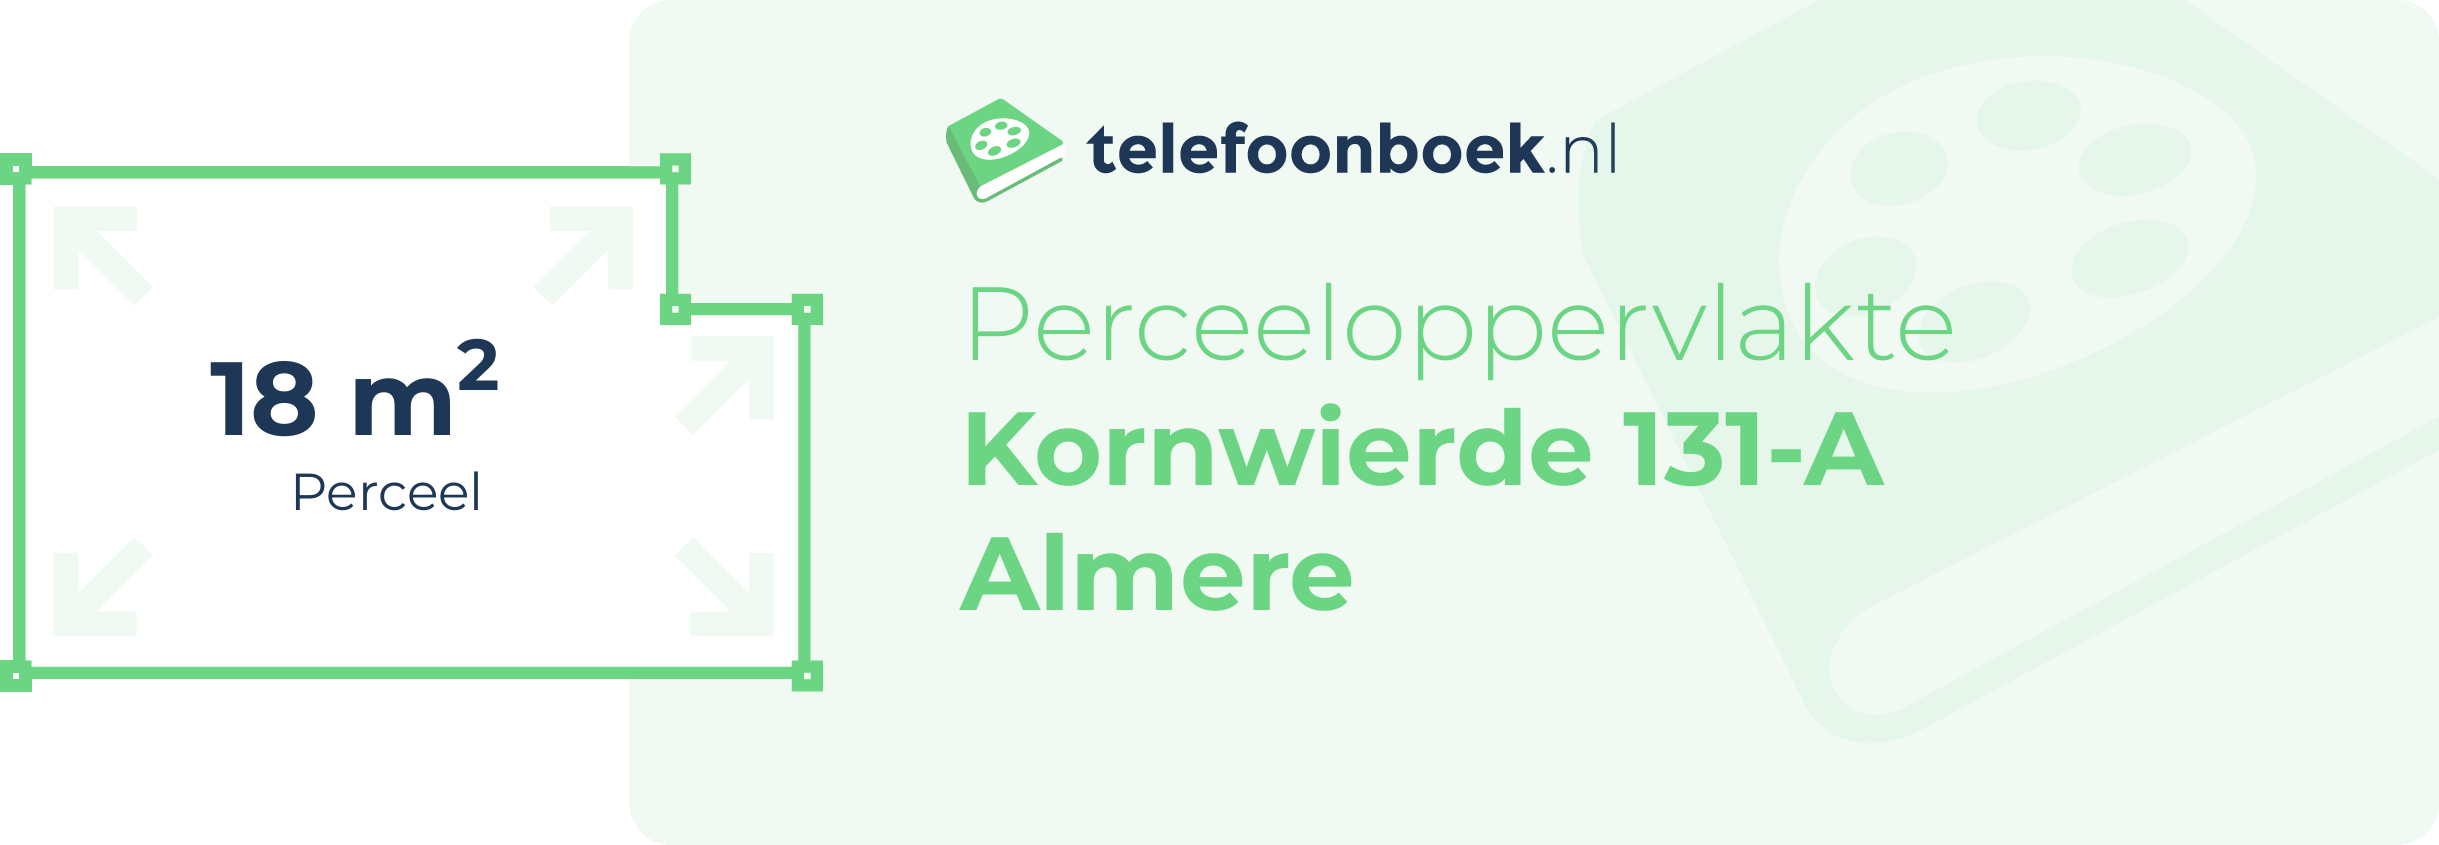 Perceeloppervlakte Kornwierde 131-A Almere